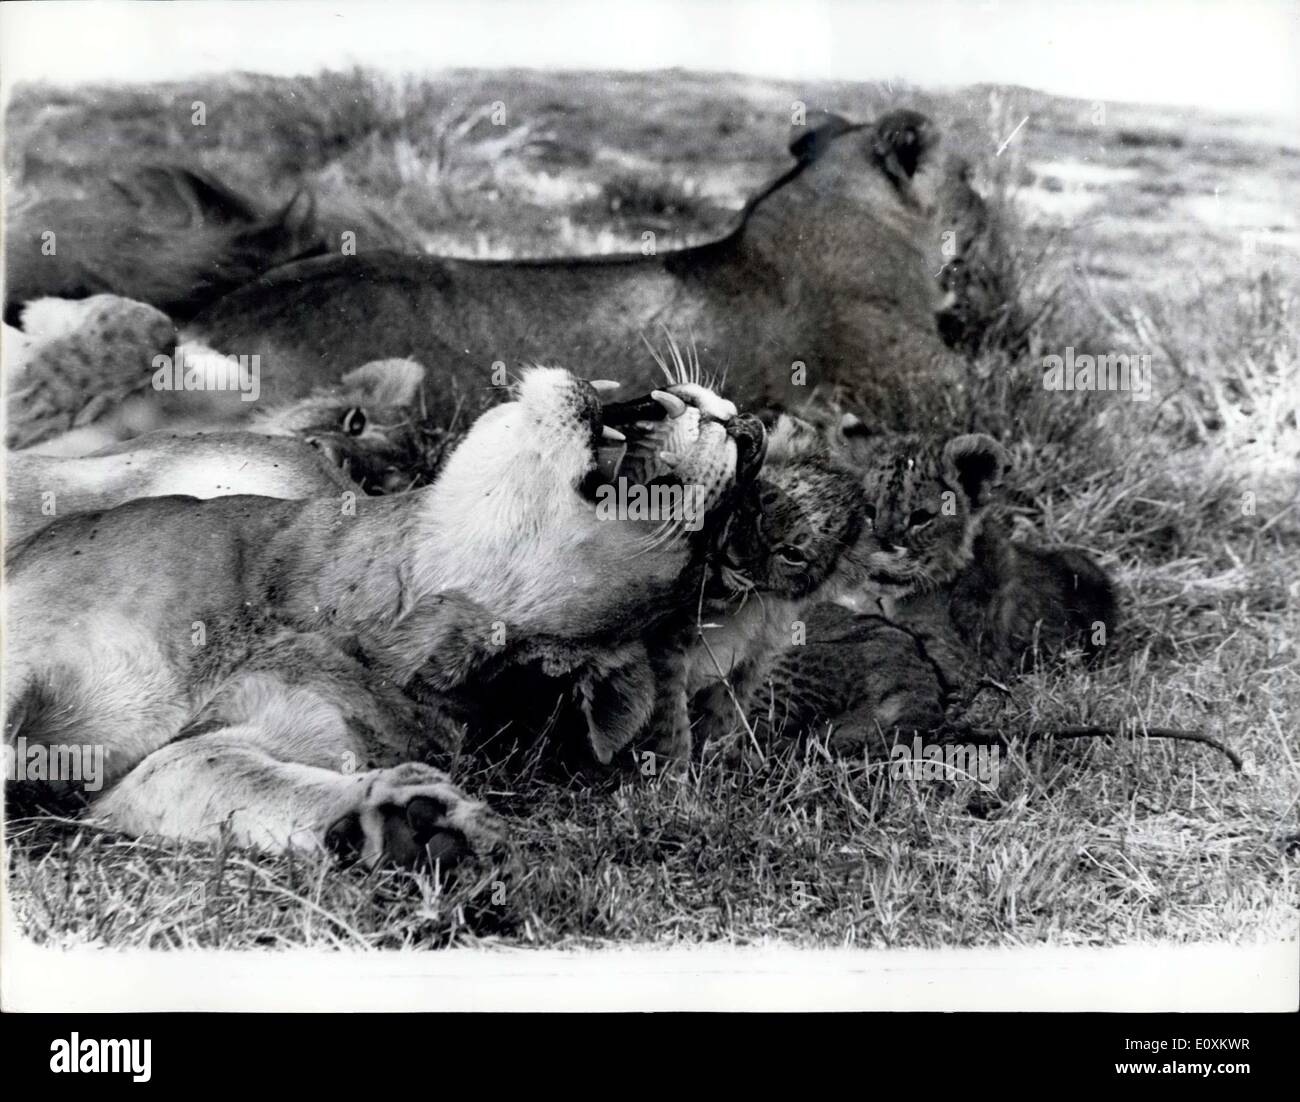 Marzo 14, 1967 - Escena Nacional entre los leones en el Parque Nacional de Nairobi: un encantador estudio de una leona y sus cachorros, tomada en el parque nacional de Nairobi, que está a sólo cinco minutos en coche del centro de Nairobi, Kenya. Foto de stock